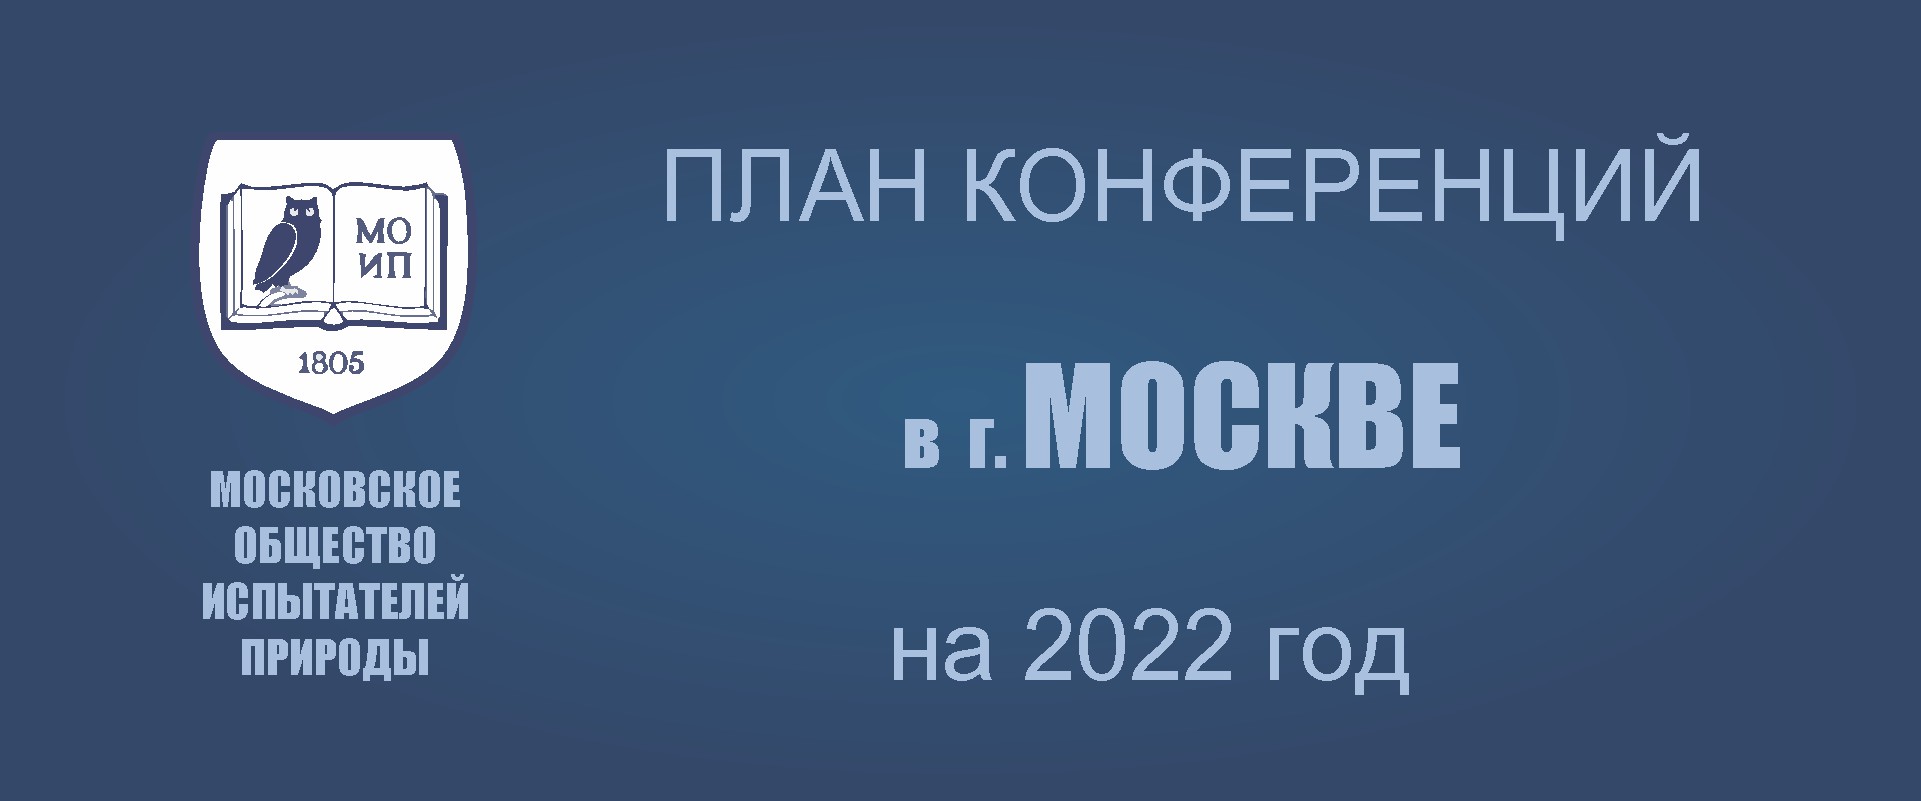 ПРЕДСТОЯЩИЕ КОНФЕРЕНЦИИ В МОСКВЕ: в 2022 году